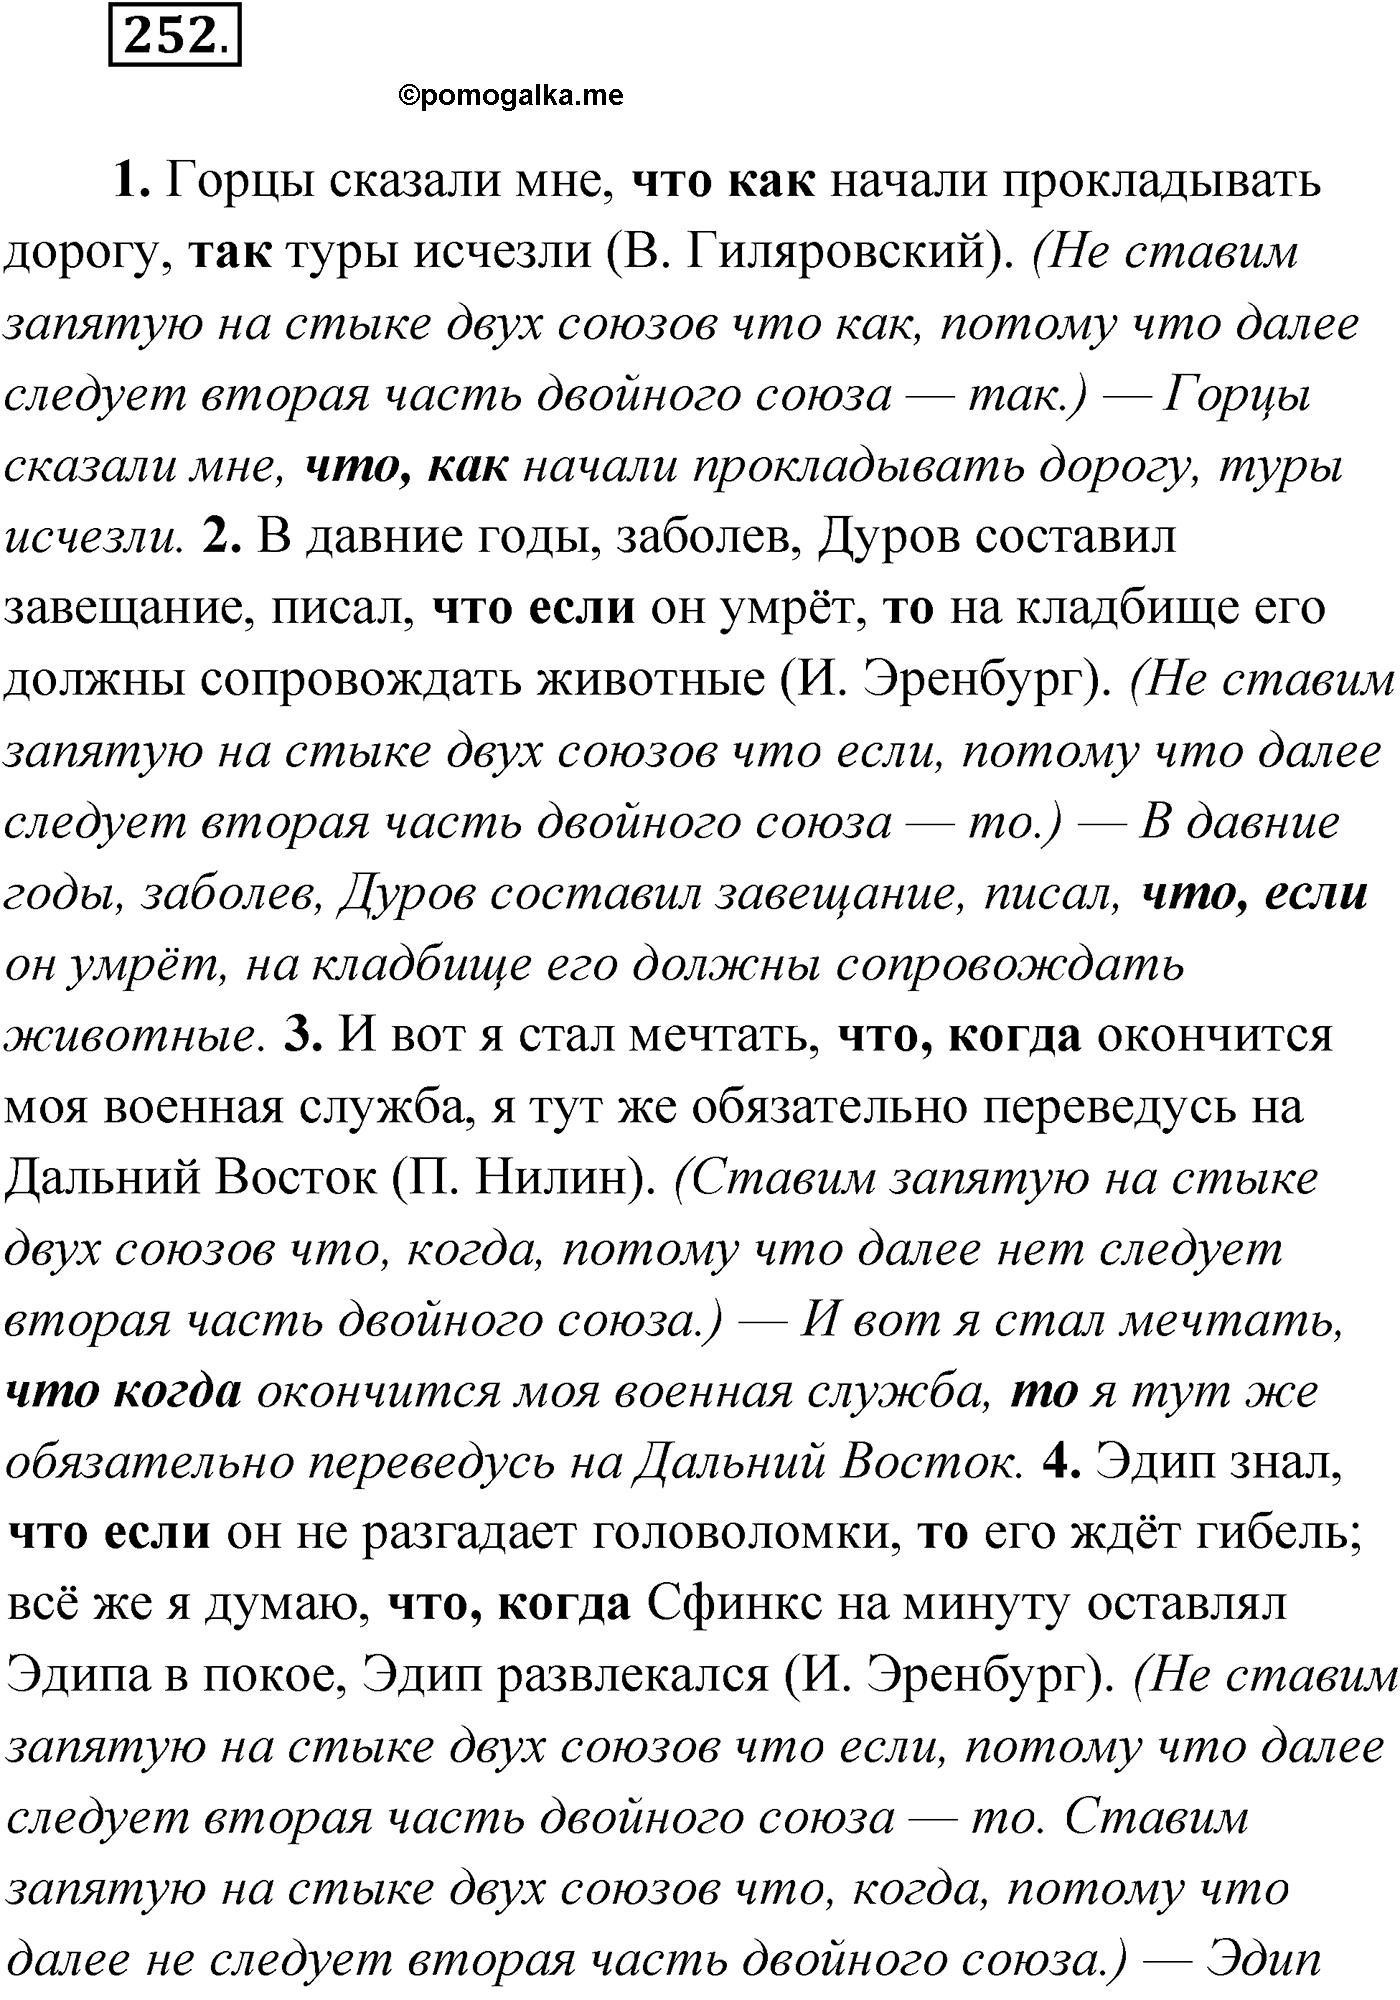 упражнение №252 русский язык 9 класс Мурина 2019 год